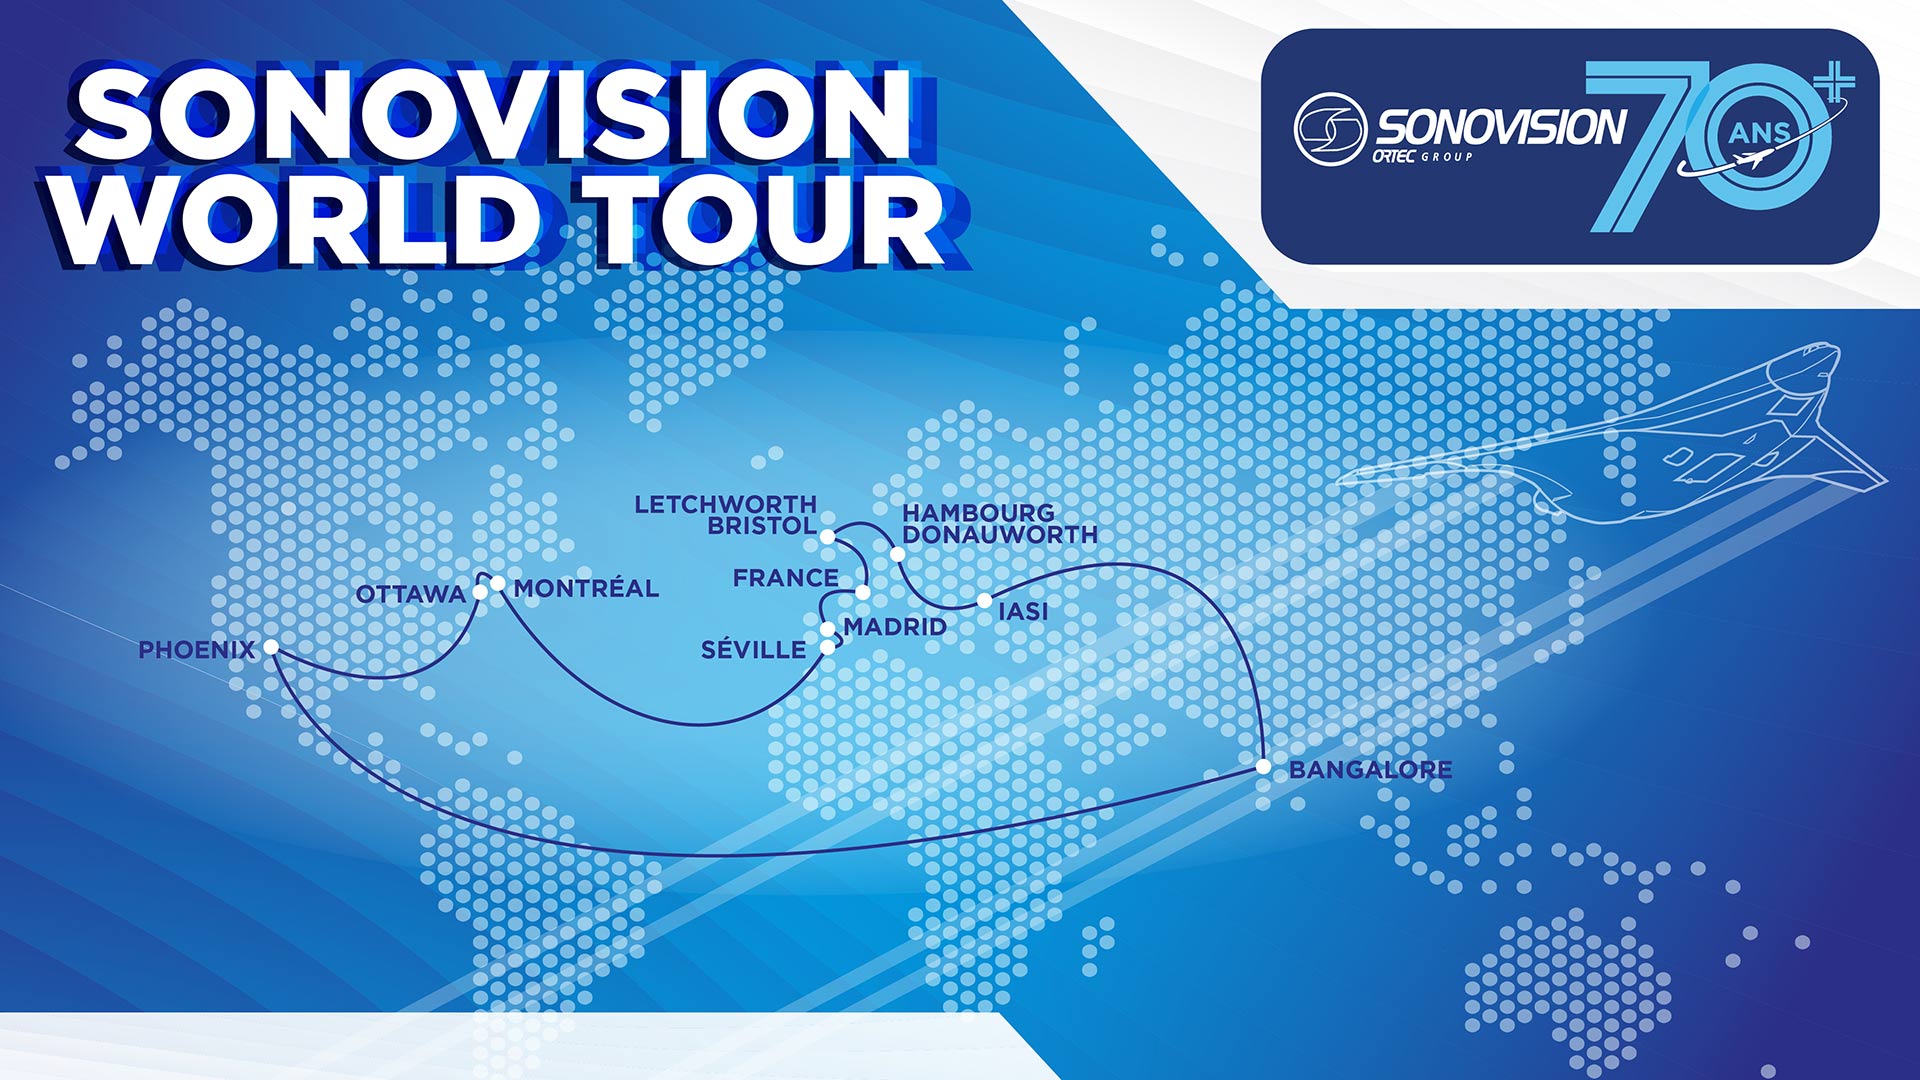 Sonovision World Tour 2020